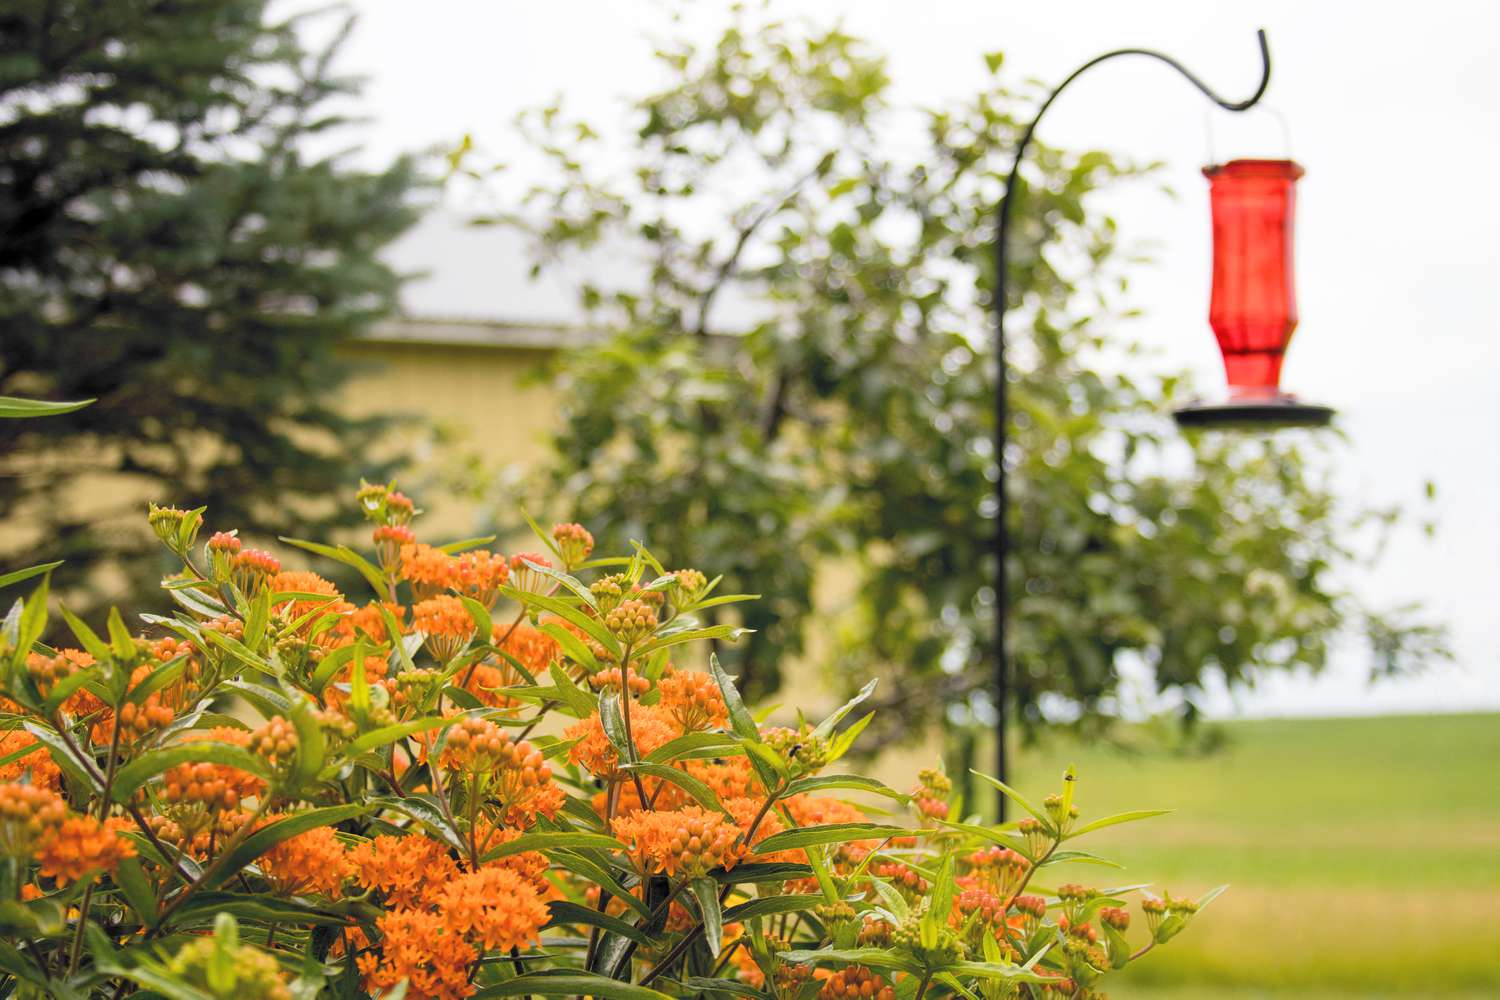 Orangefarbene Blumenbüschel in der Nähe des Kolibri-Futters im Garten